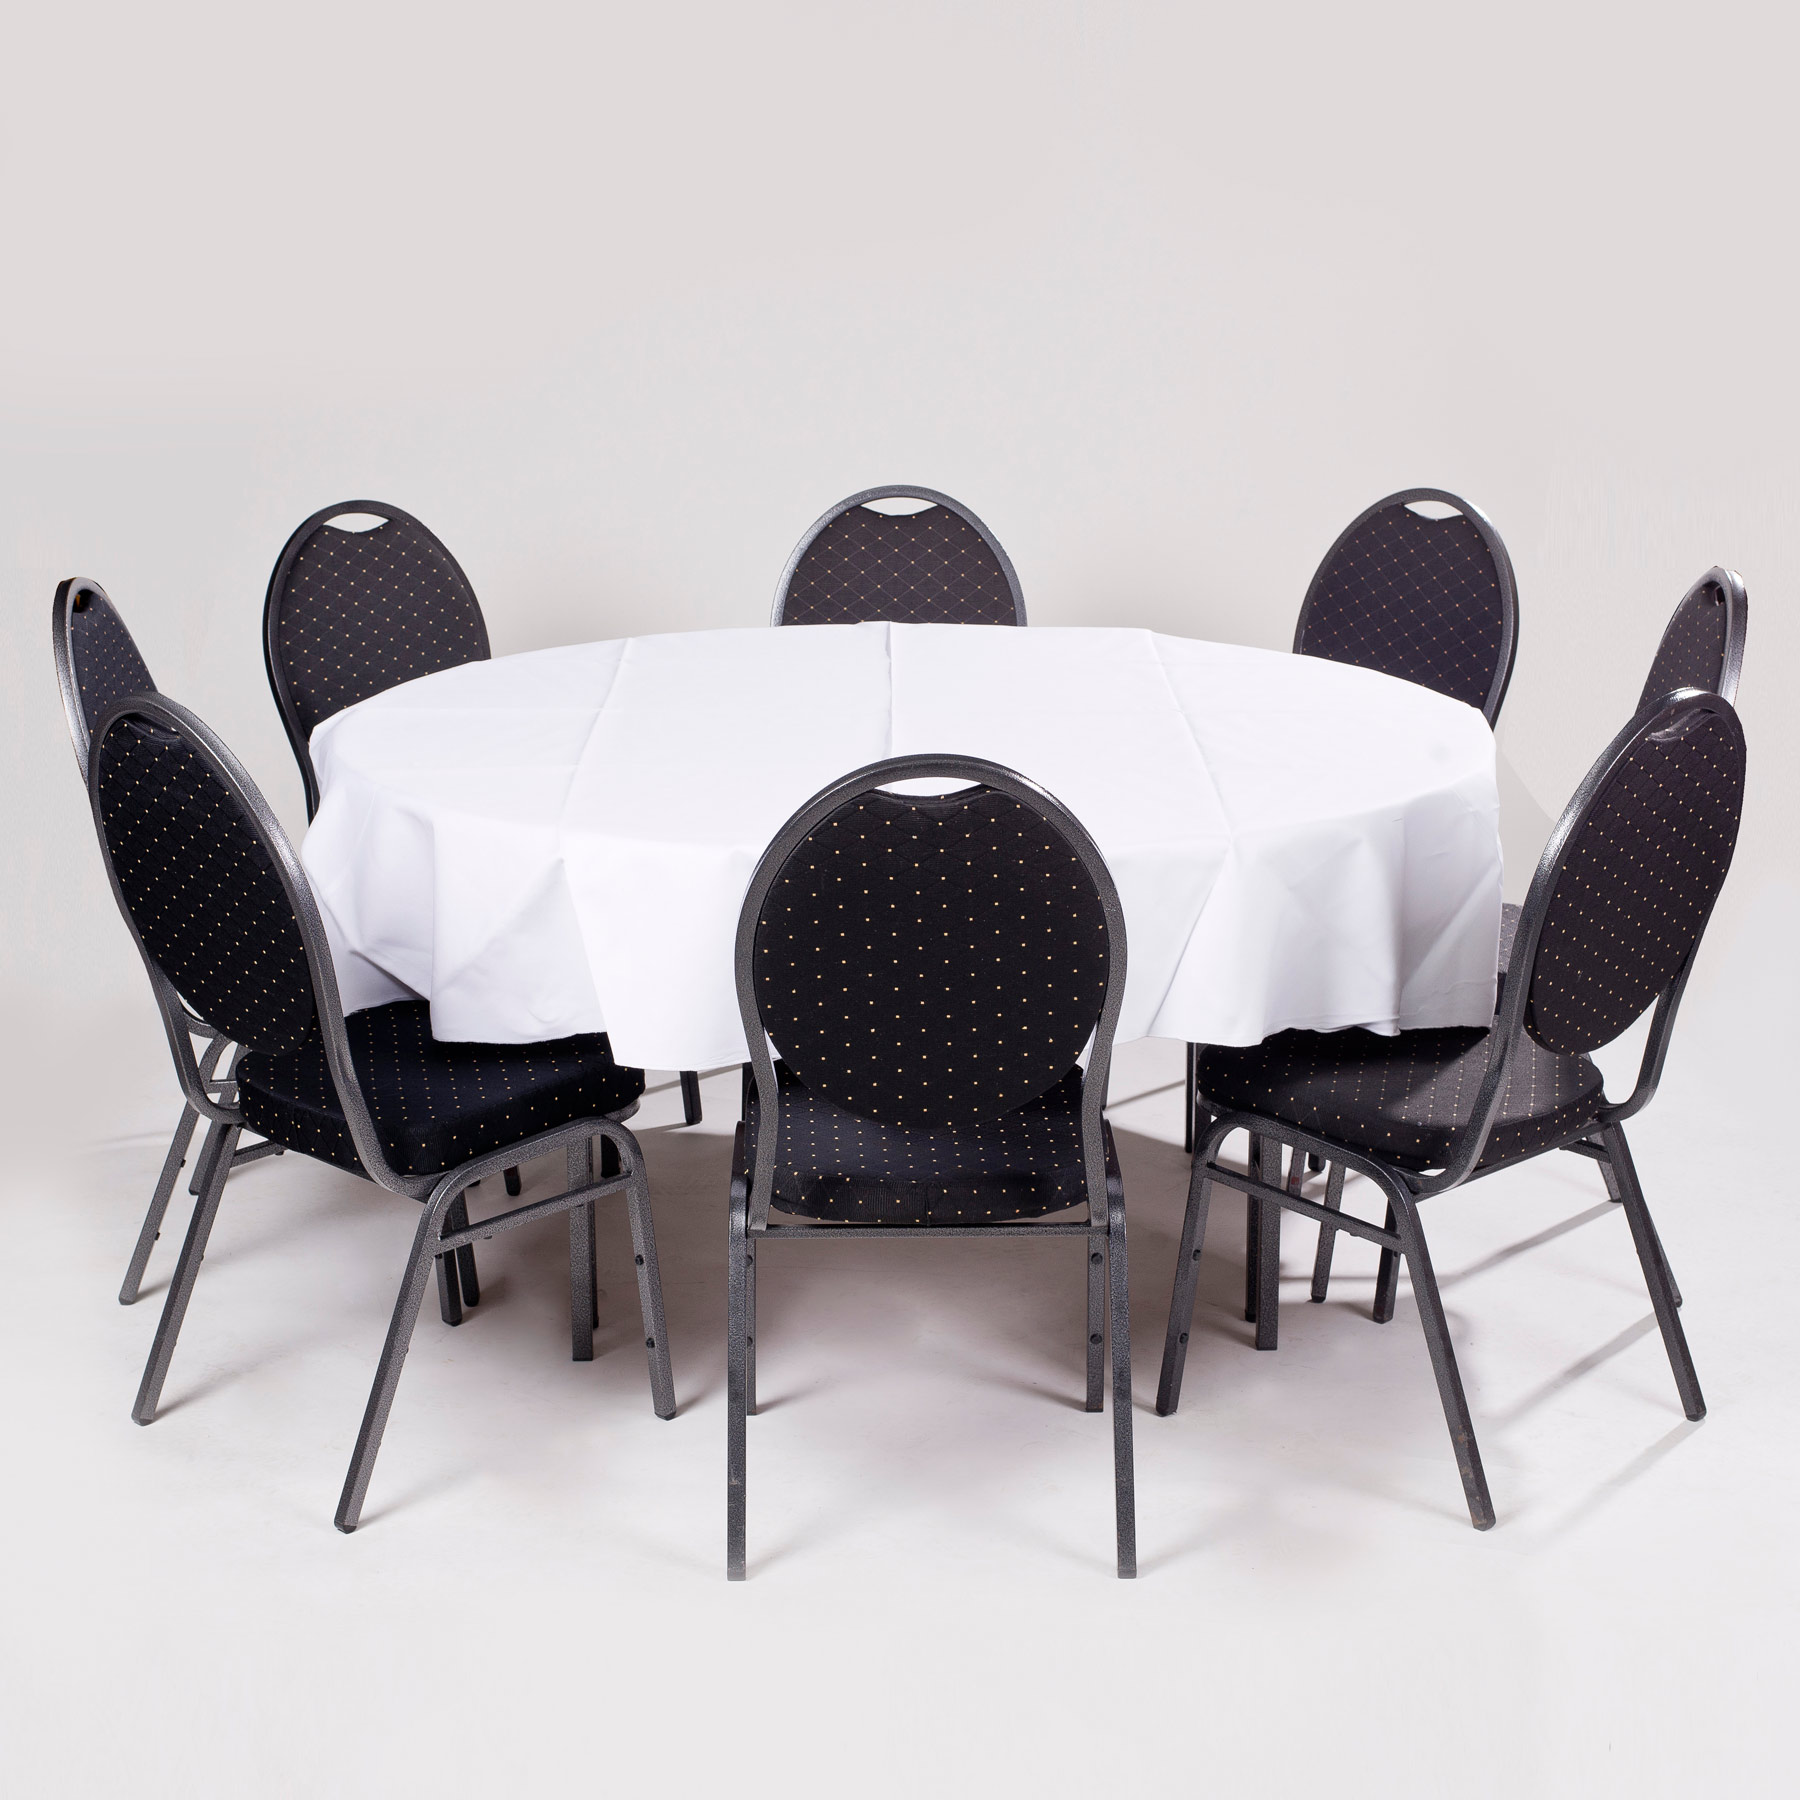 Set für 8 Personen | 8x Stuhl, 1x Tisch rund d~150cm ...